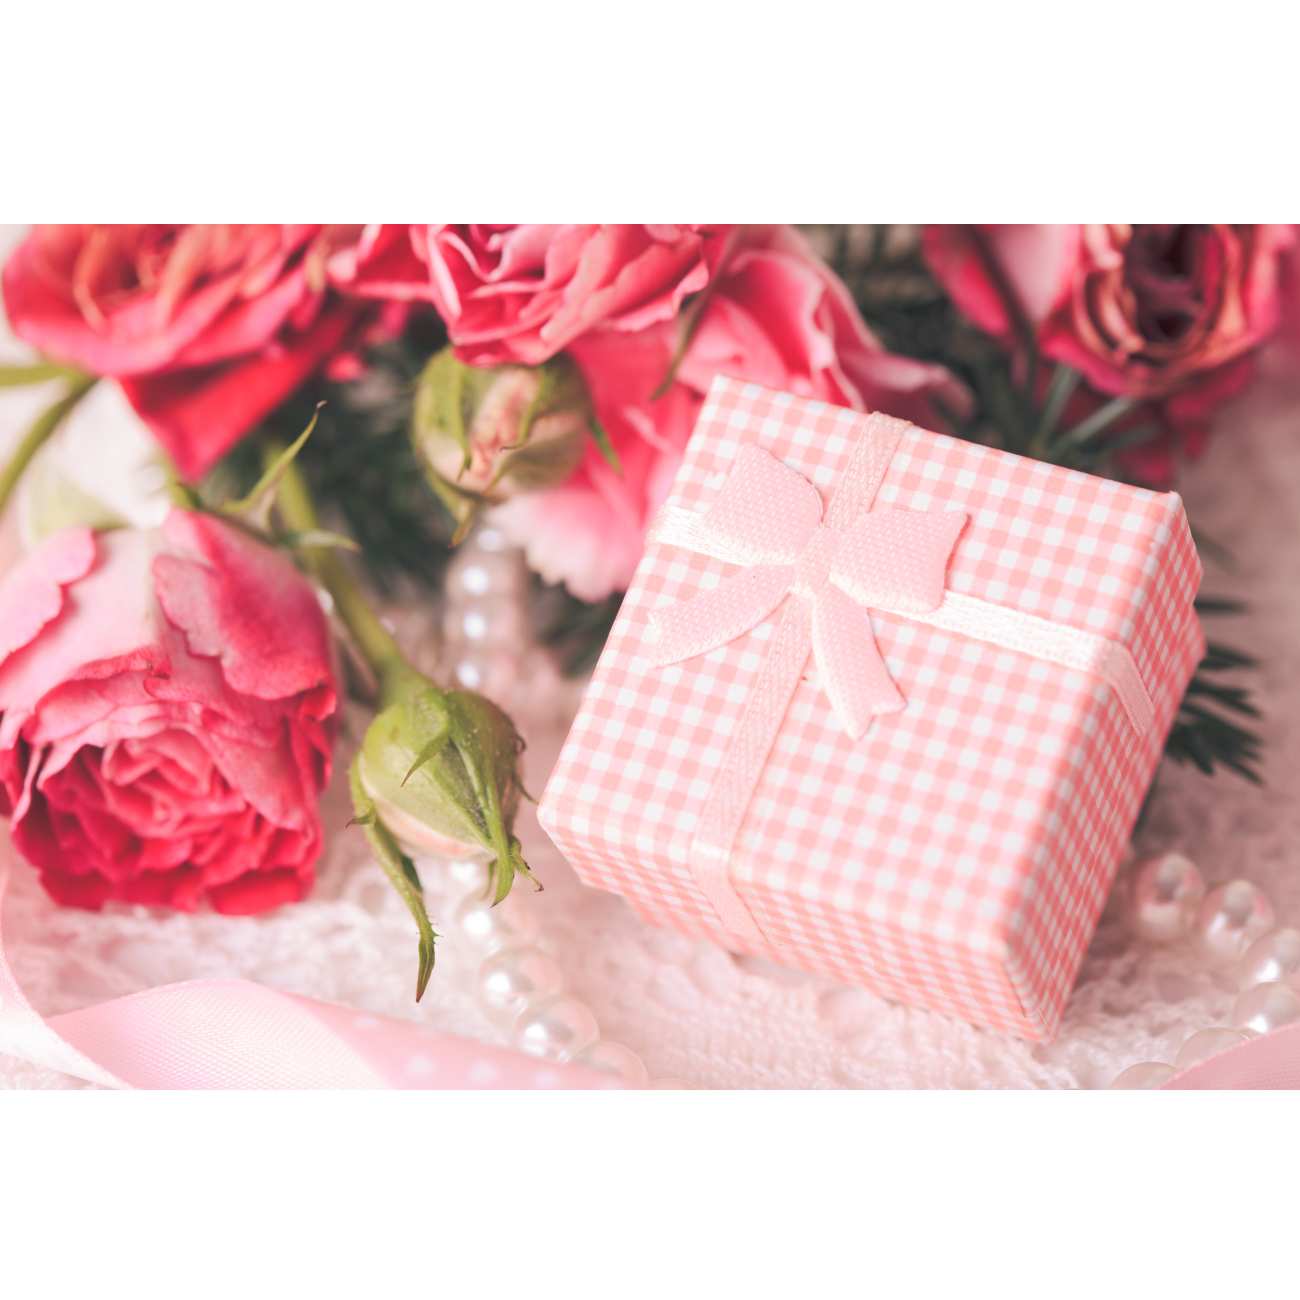 En rosa gaveeske med rosa roser og perler.